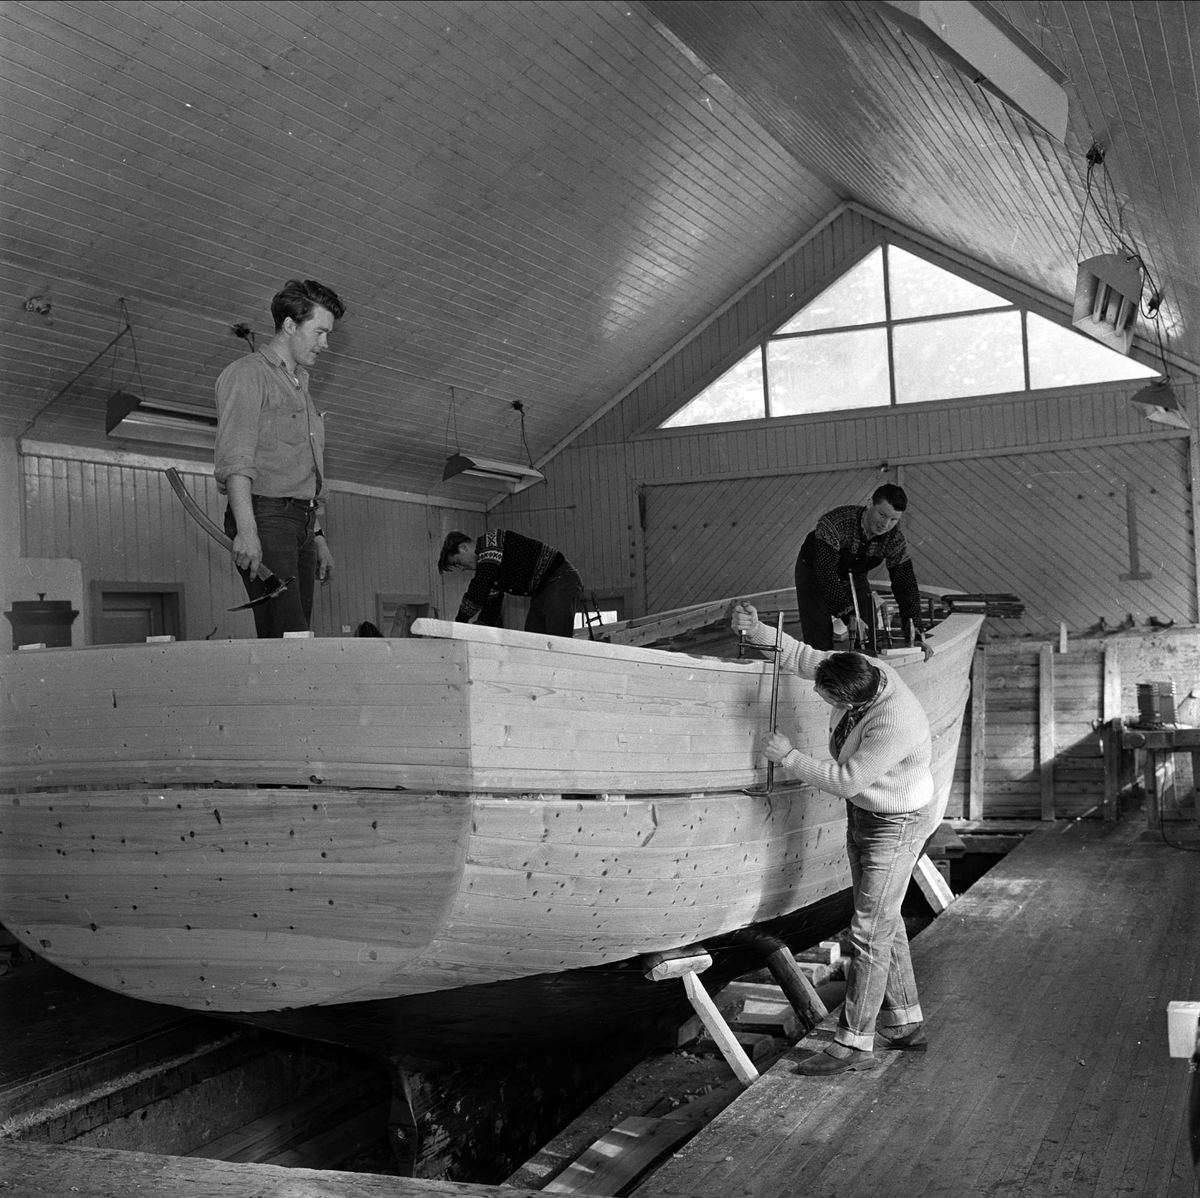 Saltdal, Nordland, april.1963. Båtbyggerskolen. Arbeid på båt i verksted